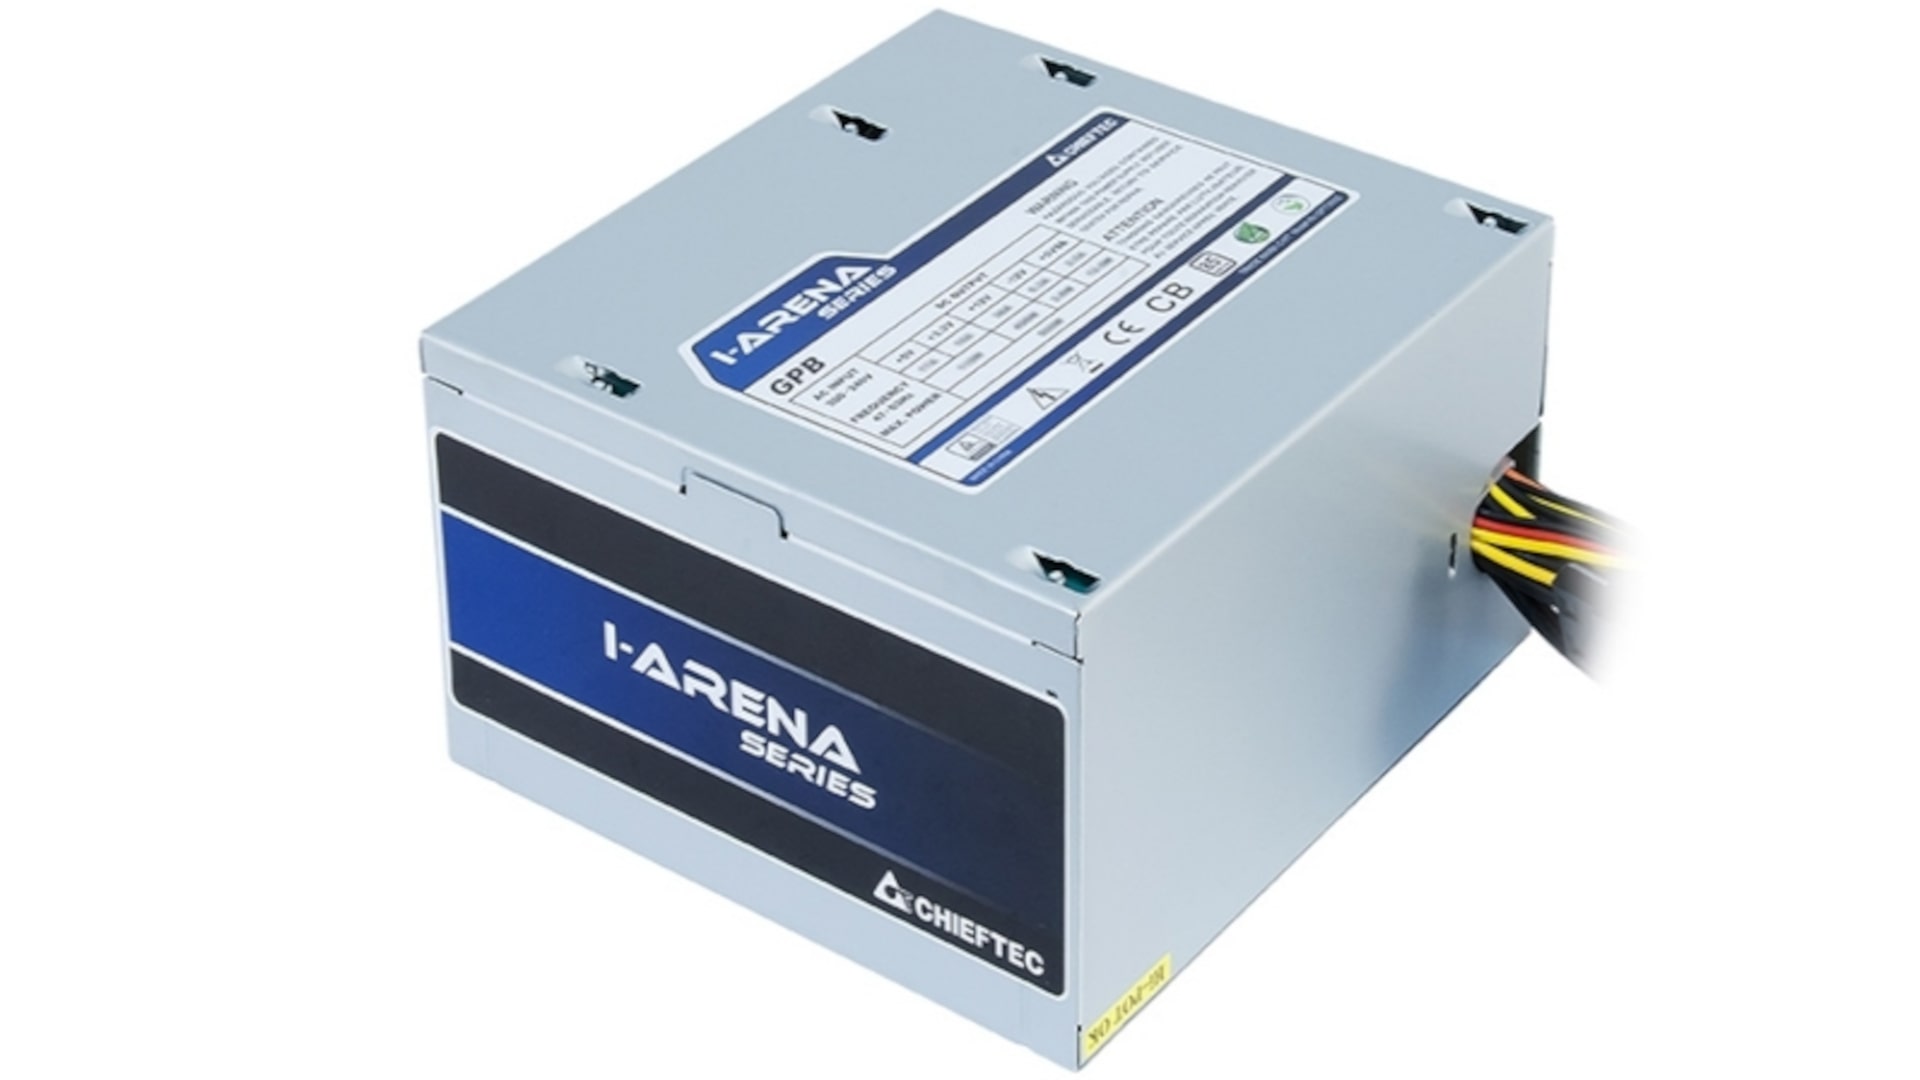 Chieftec iARENA GPB 500S Power Supply 2